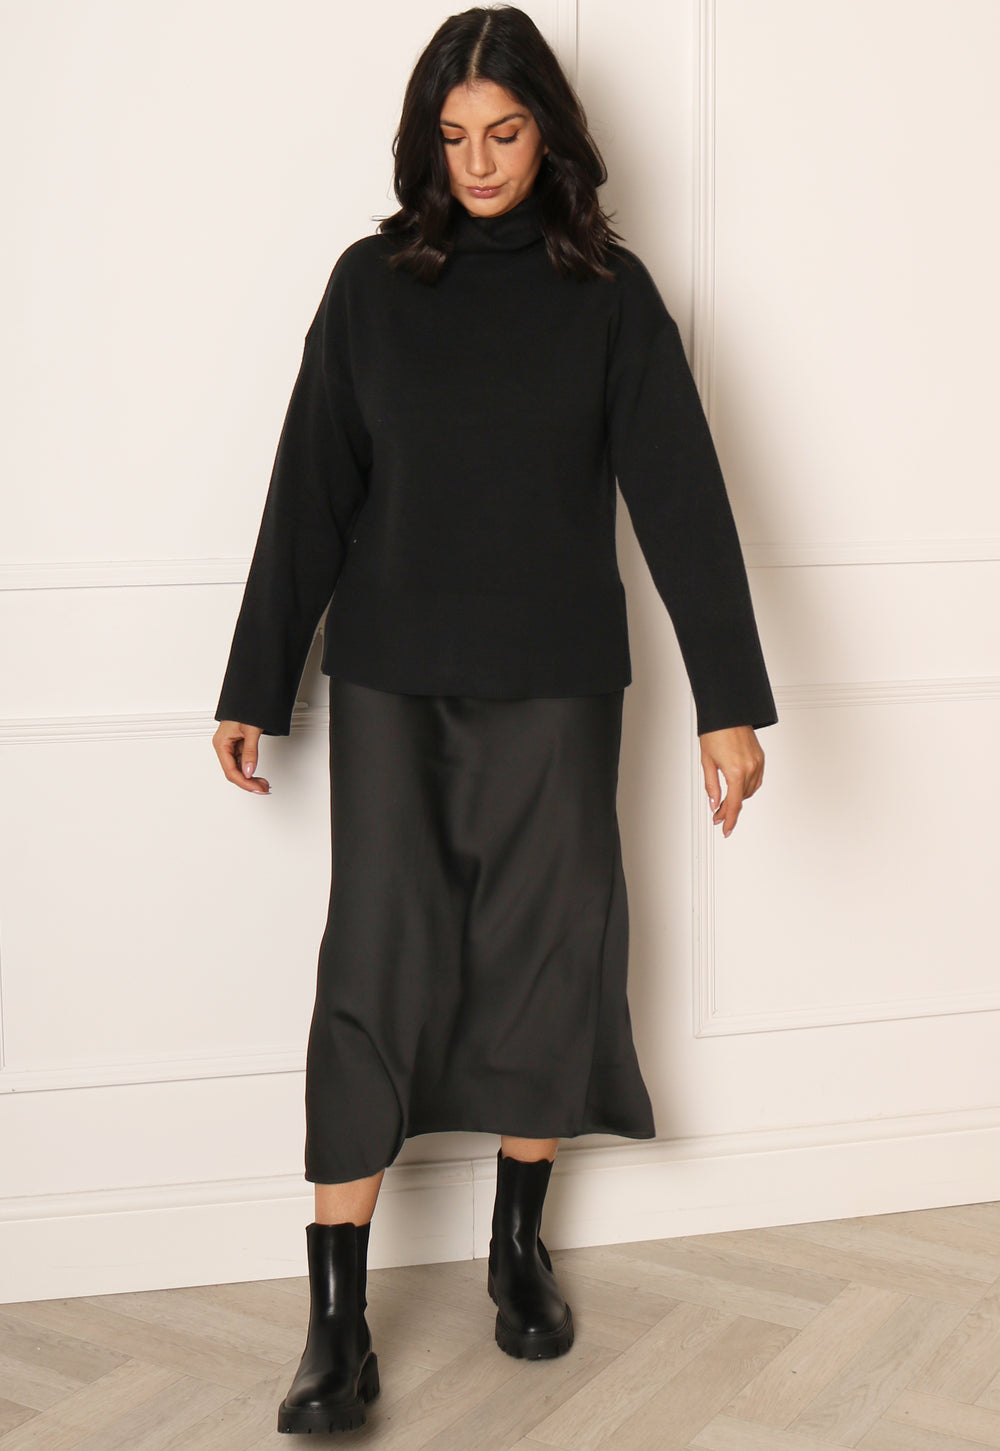 VILA Ellete Satin Slip Midaxi Skirt in Black - One Nation Clothing